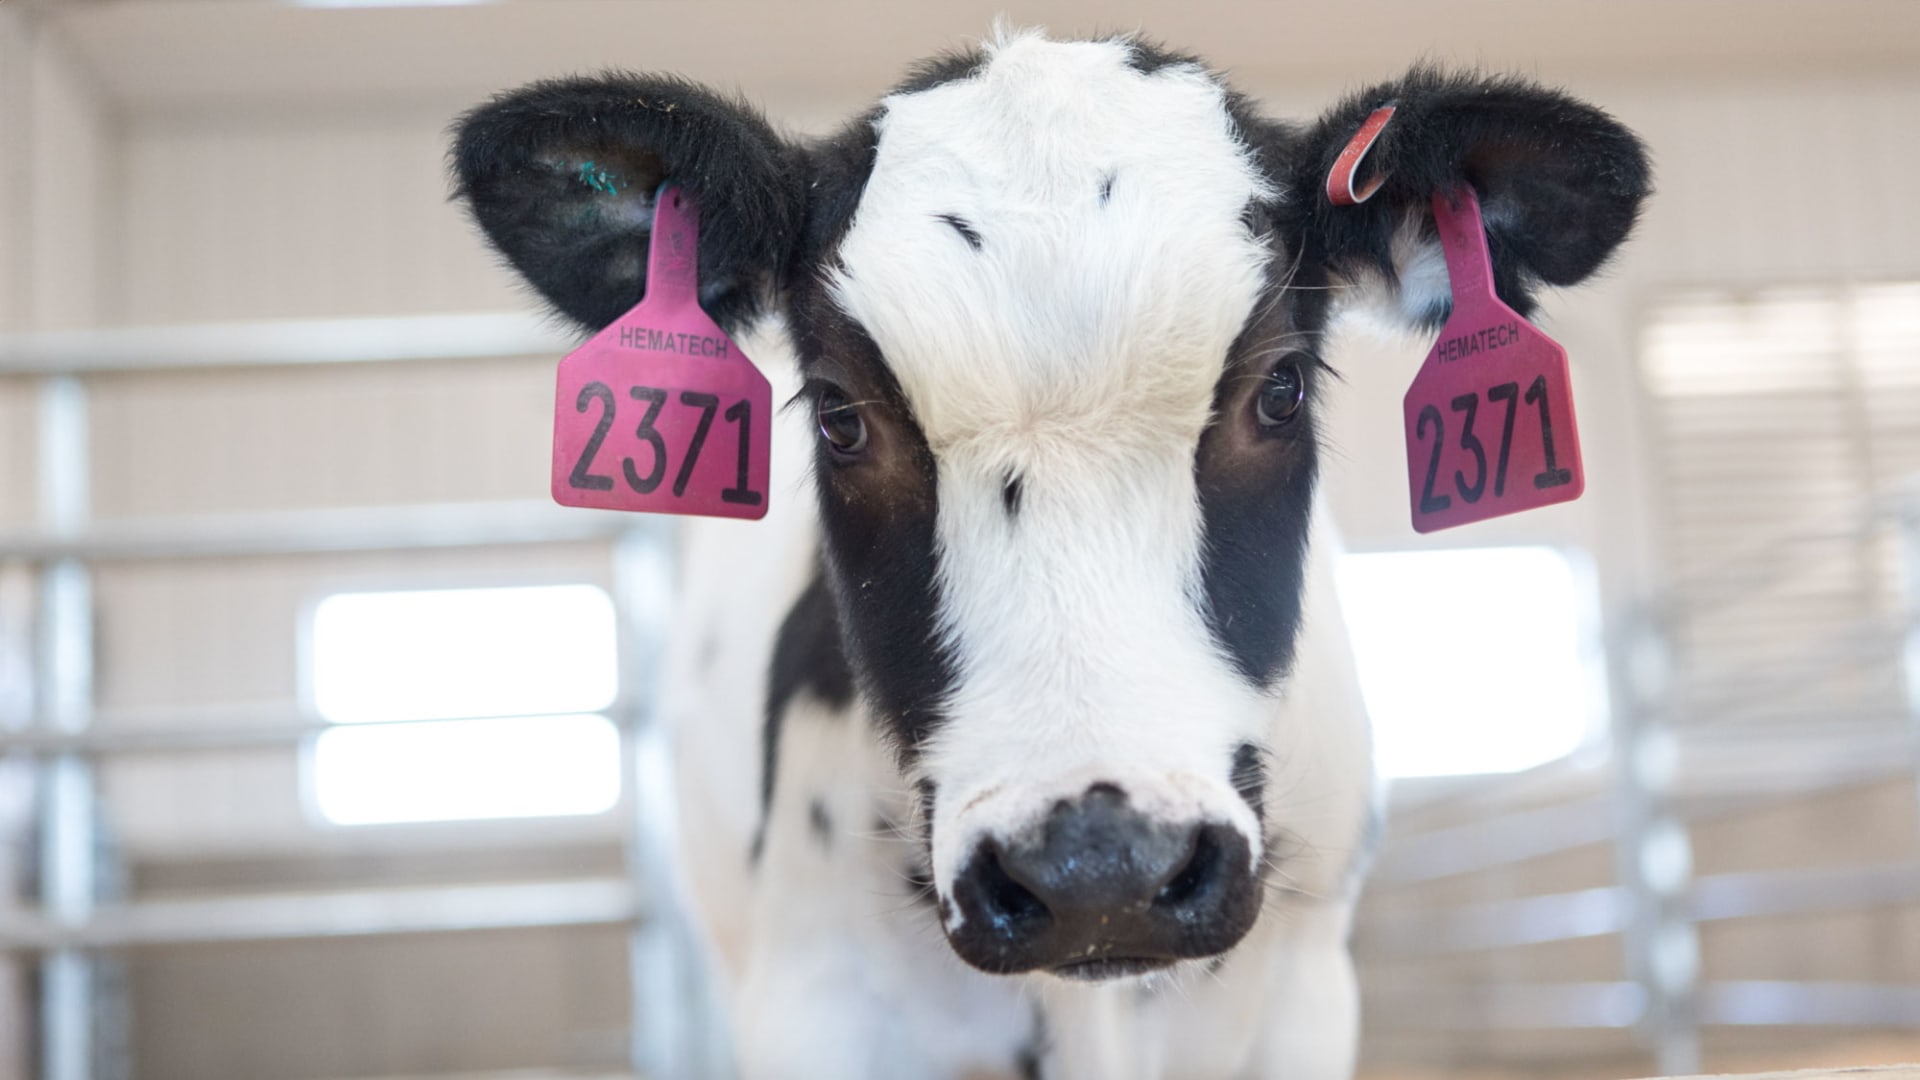 باحثون يستخدمون الأبقار لتطوير علاج لفيروس كورونا بالأجسام المضادة